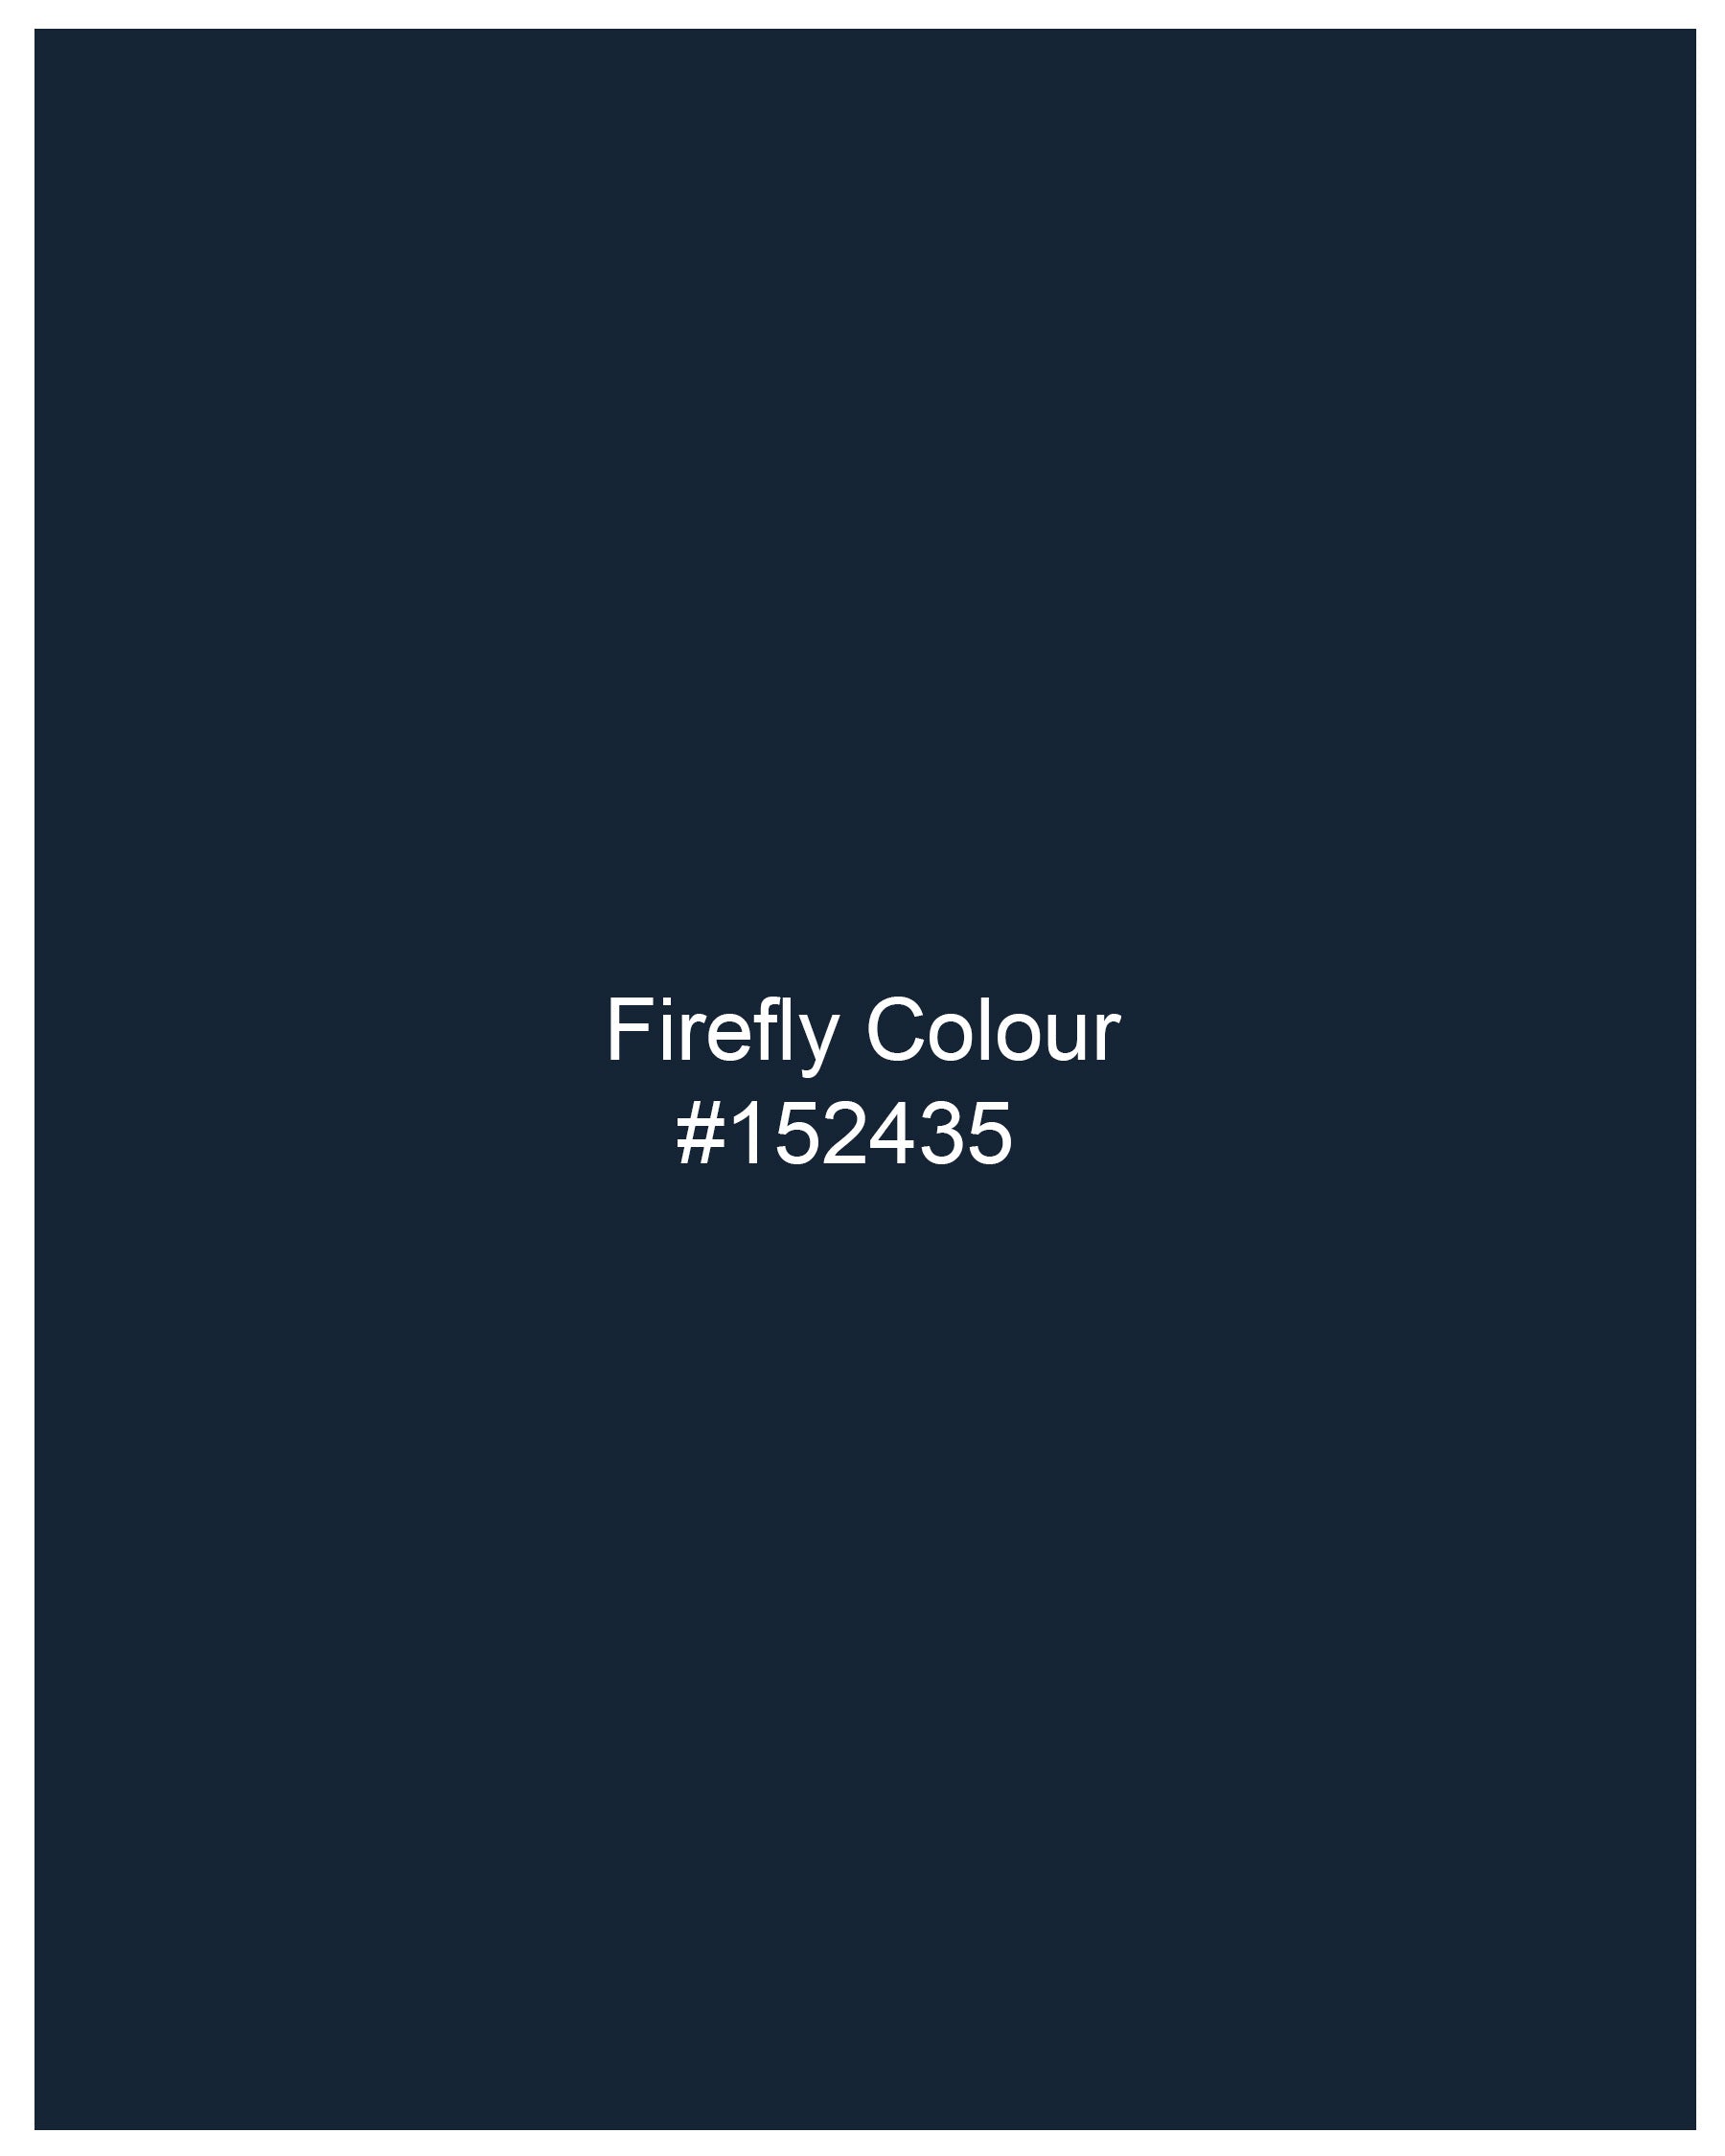 Firefly Navy Blue Premium Cotton Shirt 8055-BLE-38,8055-BLE-38,8055-BLE-39,8055-BLE-39,8055-BLE-40,8055-BLE-40,8055-BLE-42,8055-BLE-42,8055-BLE-44,8055-BLE-44,8055-BLE-46,8055-BLE-46,8055-BLE-48,8055-BLE-48,8055-BLE-50,8055-BLE-50,8055-BLE-52,8055-BLE-52